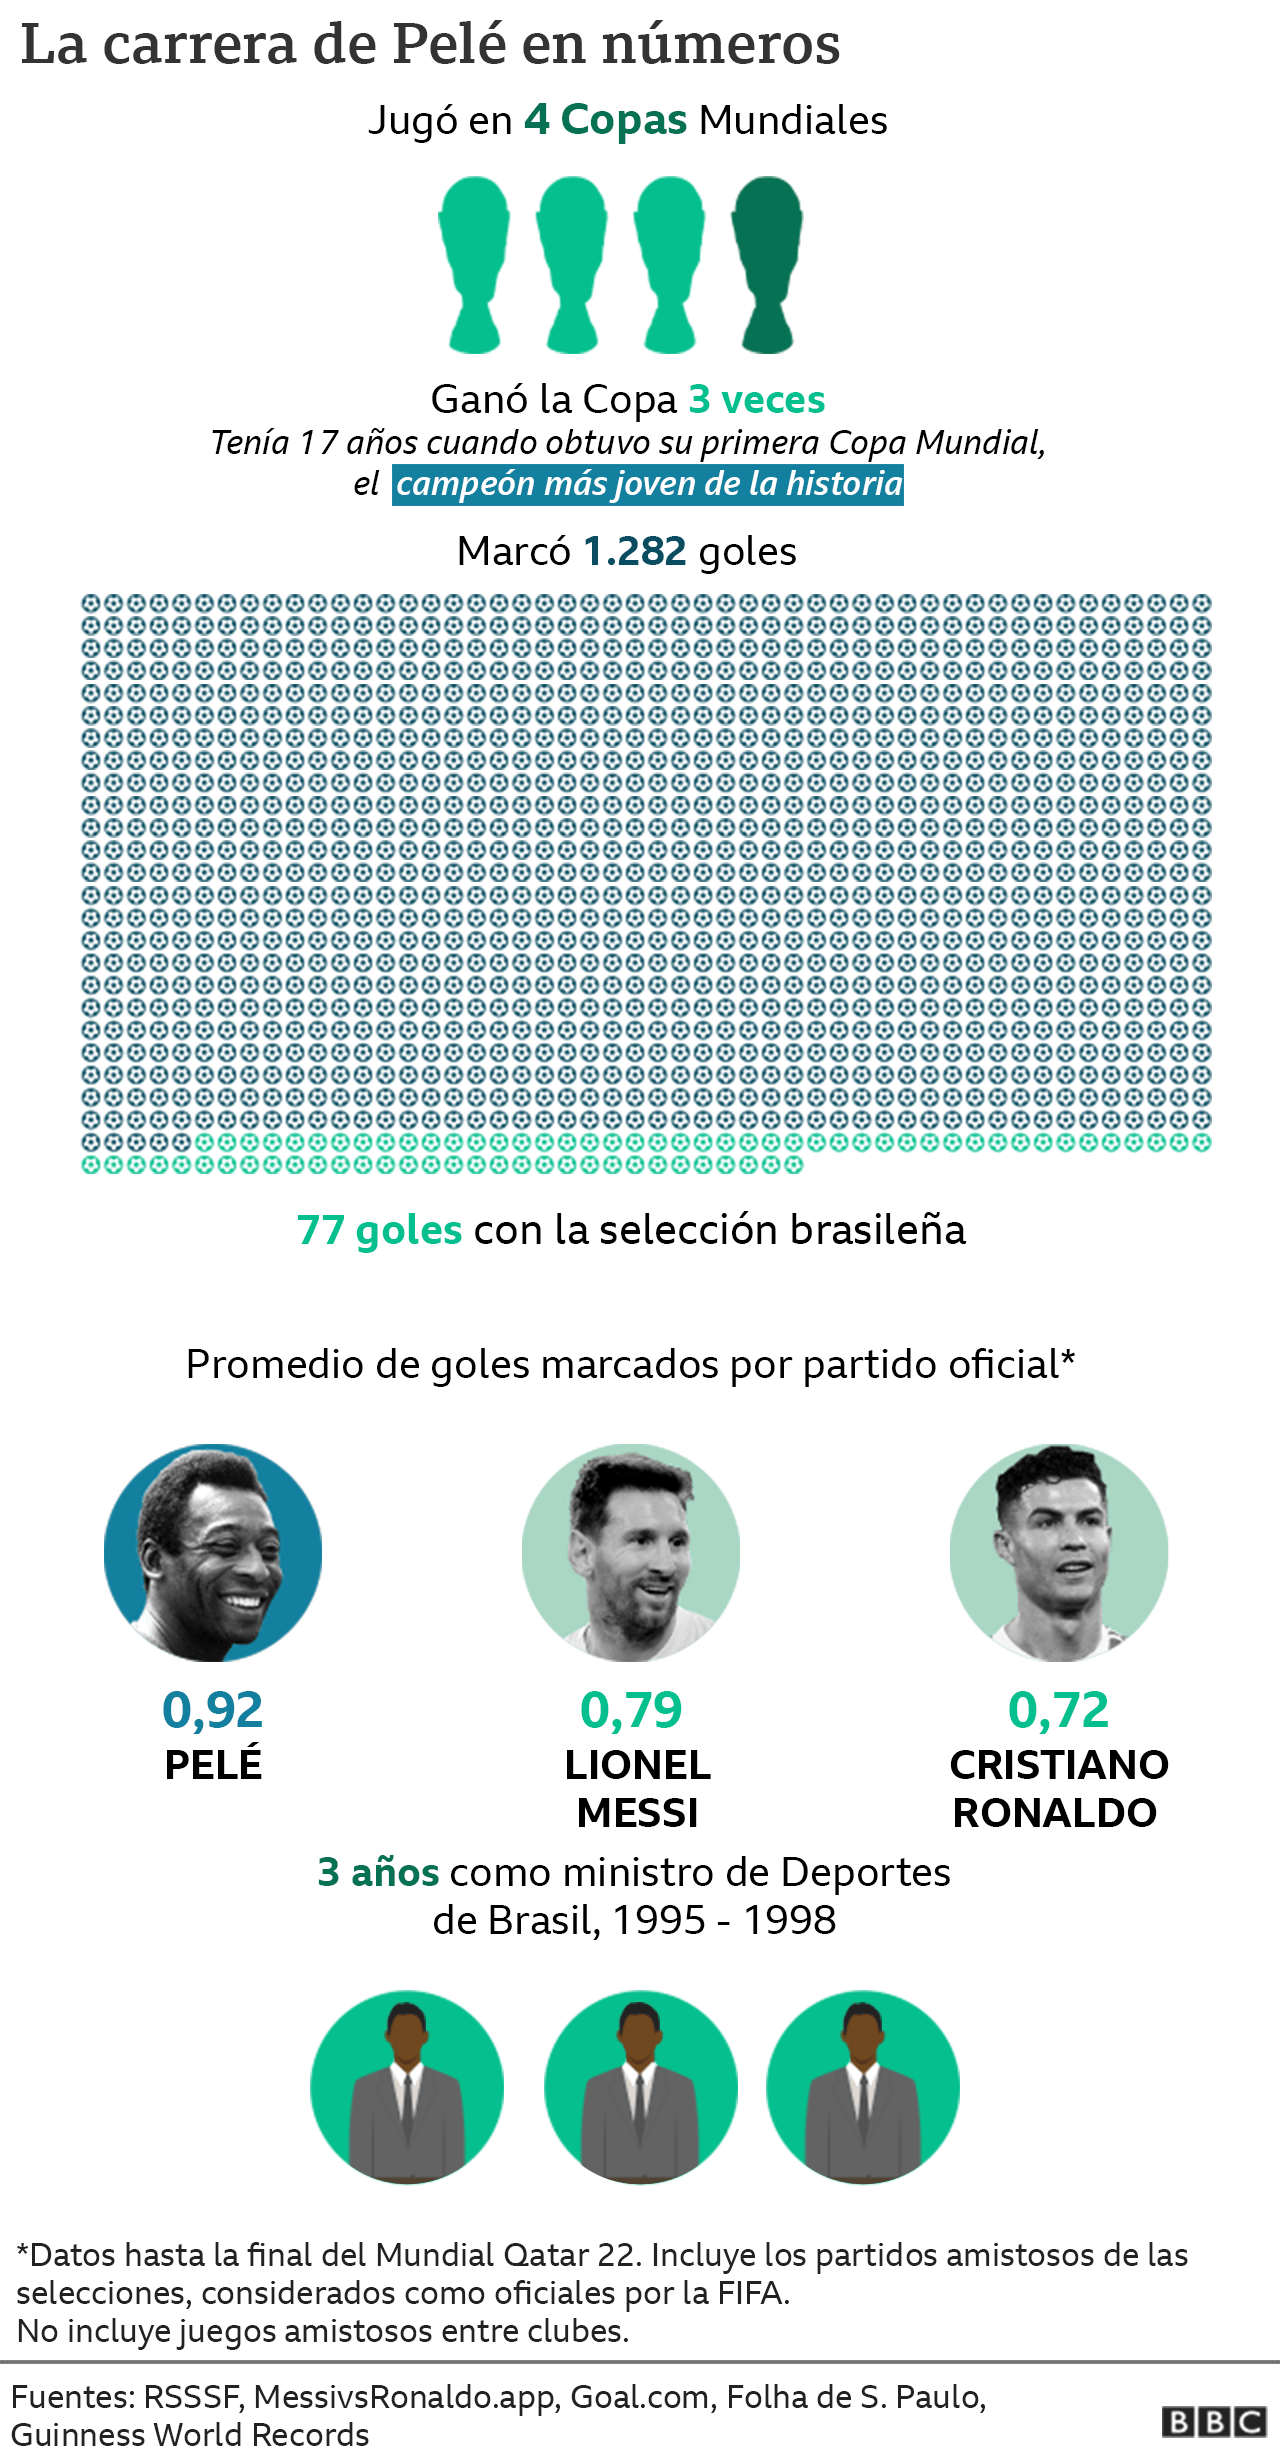 Gráfico con cifras récord de Pelé